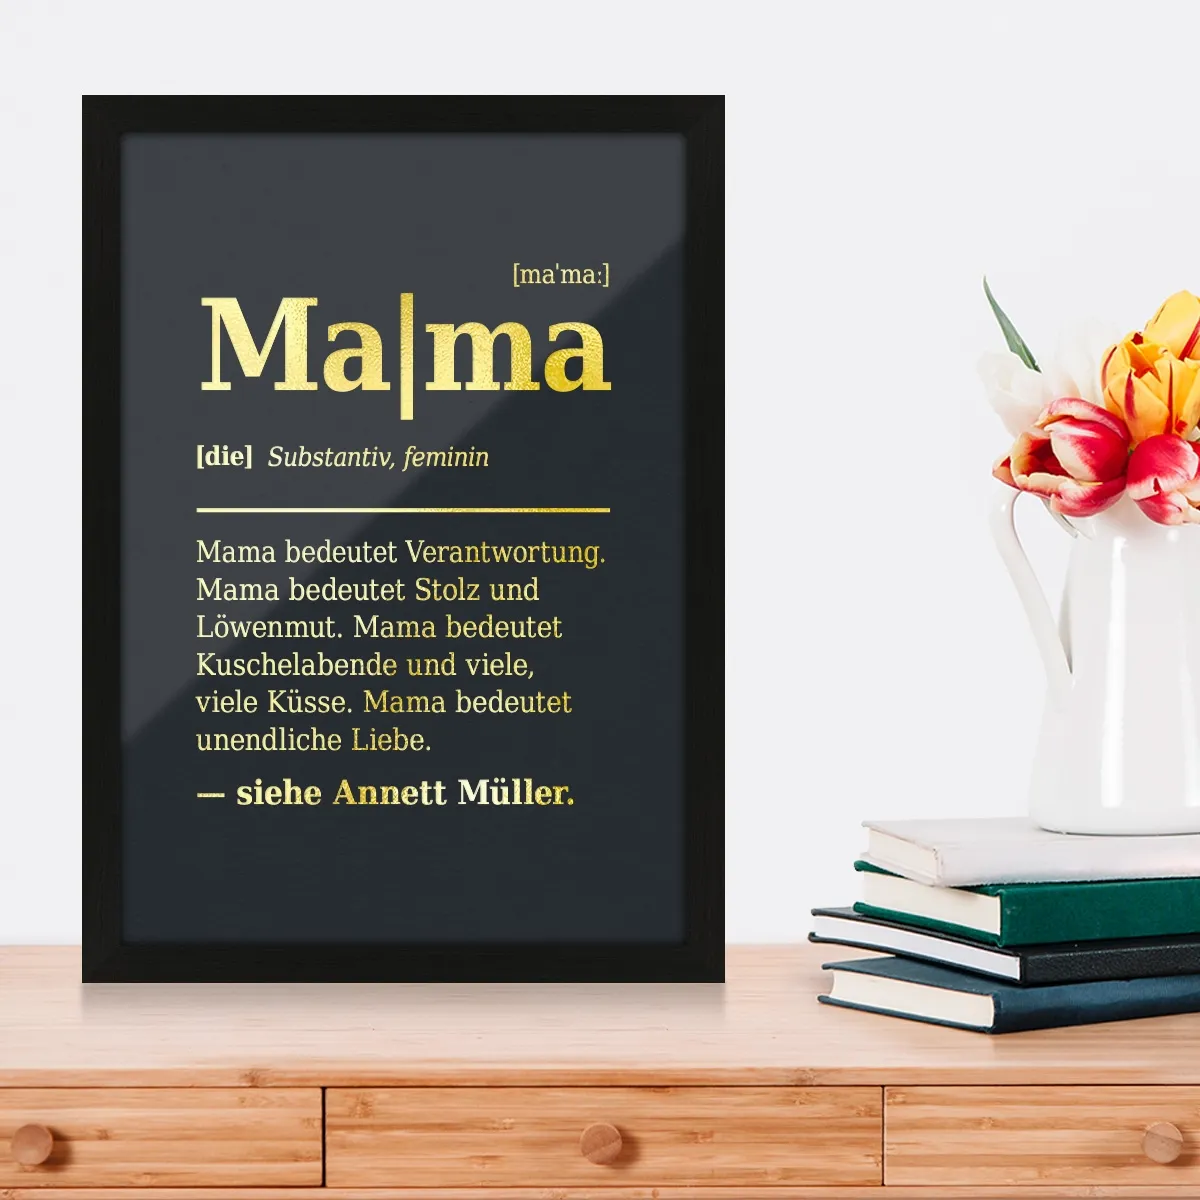 Personalisiertes Kunstdruck Poster mit Heißfolienprägung - Mama Definition